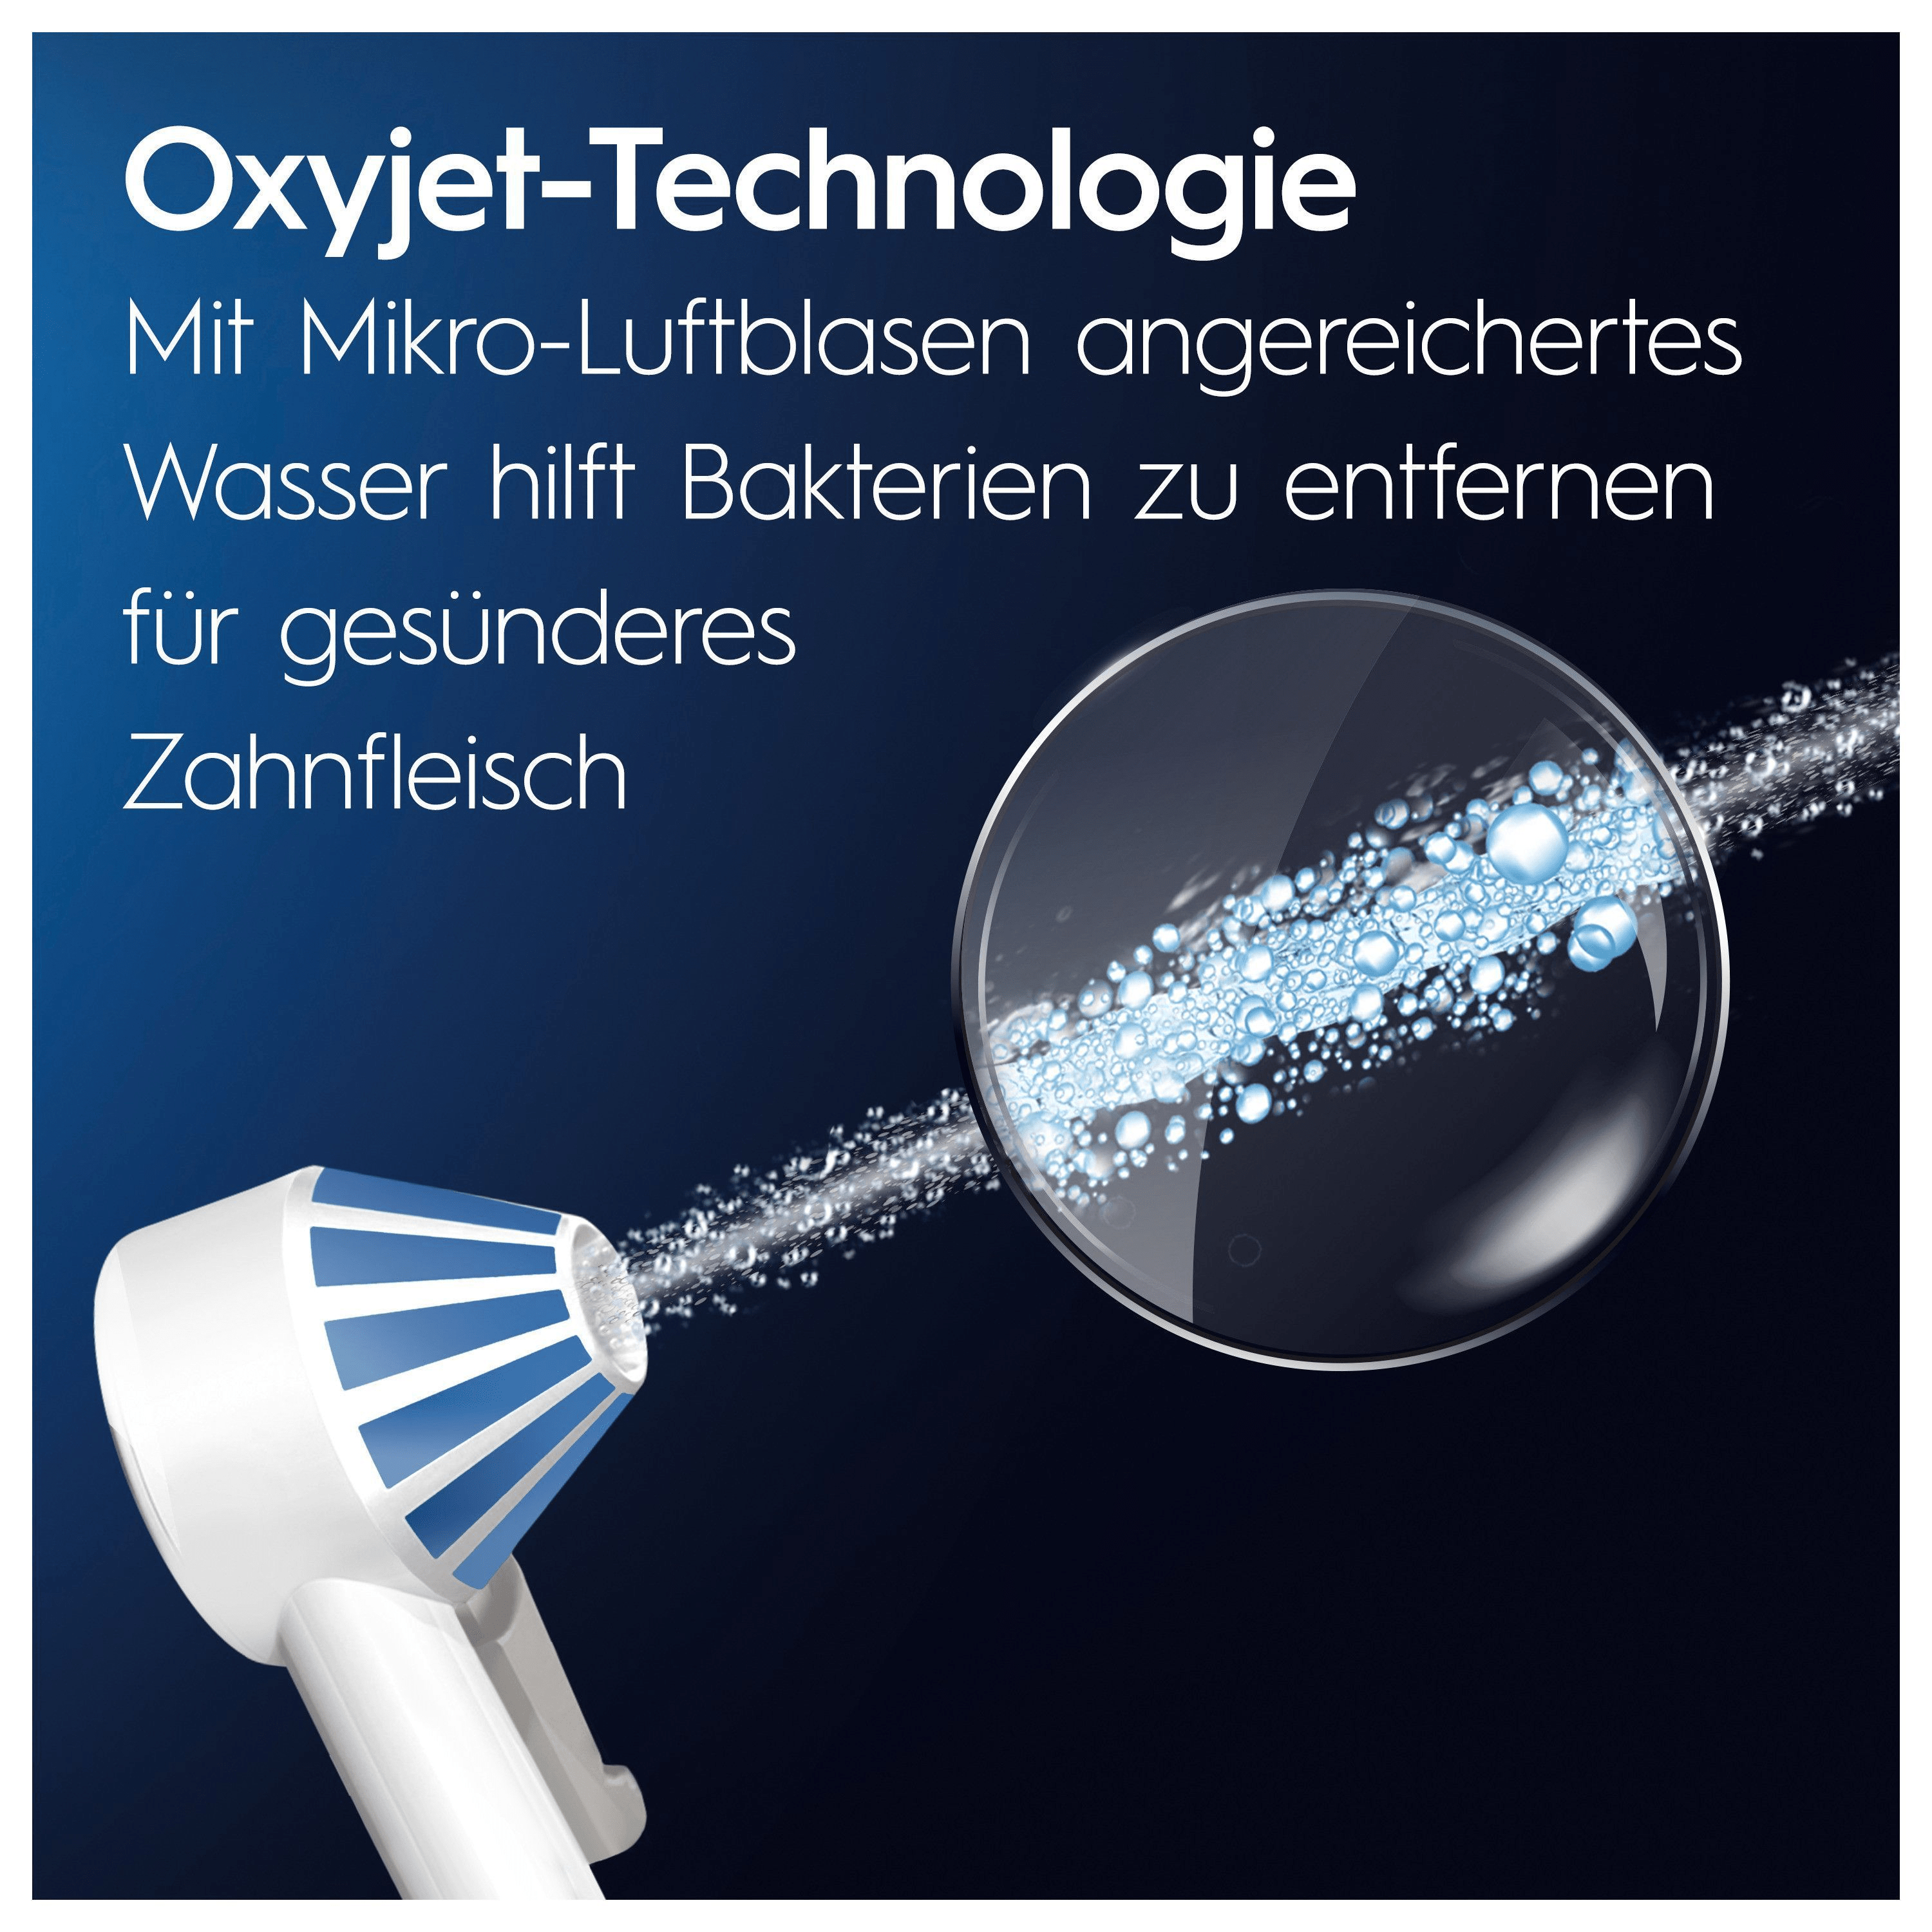 ORAL-B Weiß/Blau Reinigungssystem Munddusche JAS23 OxyJet